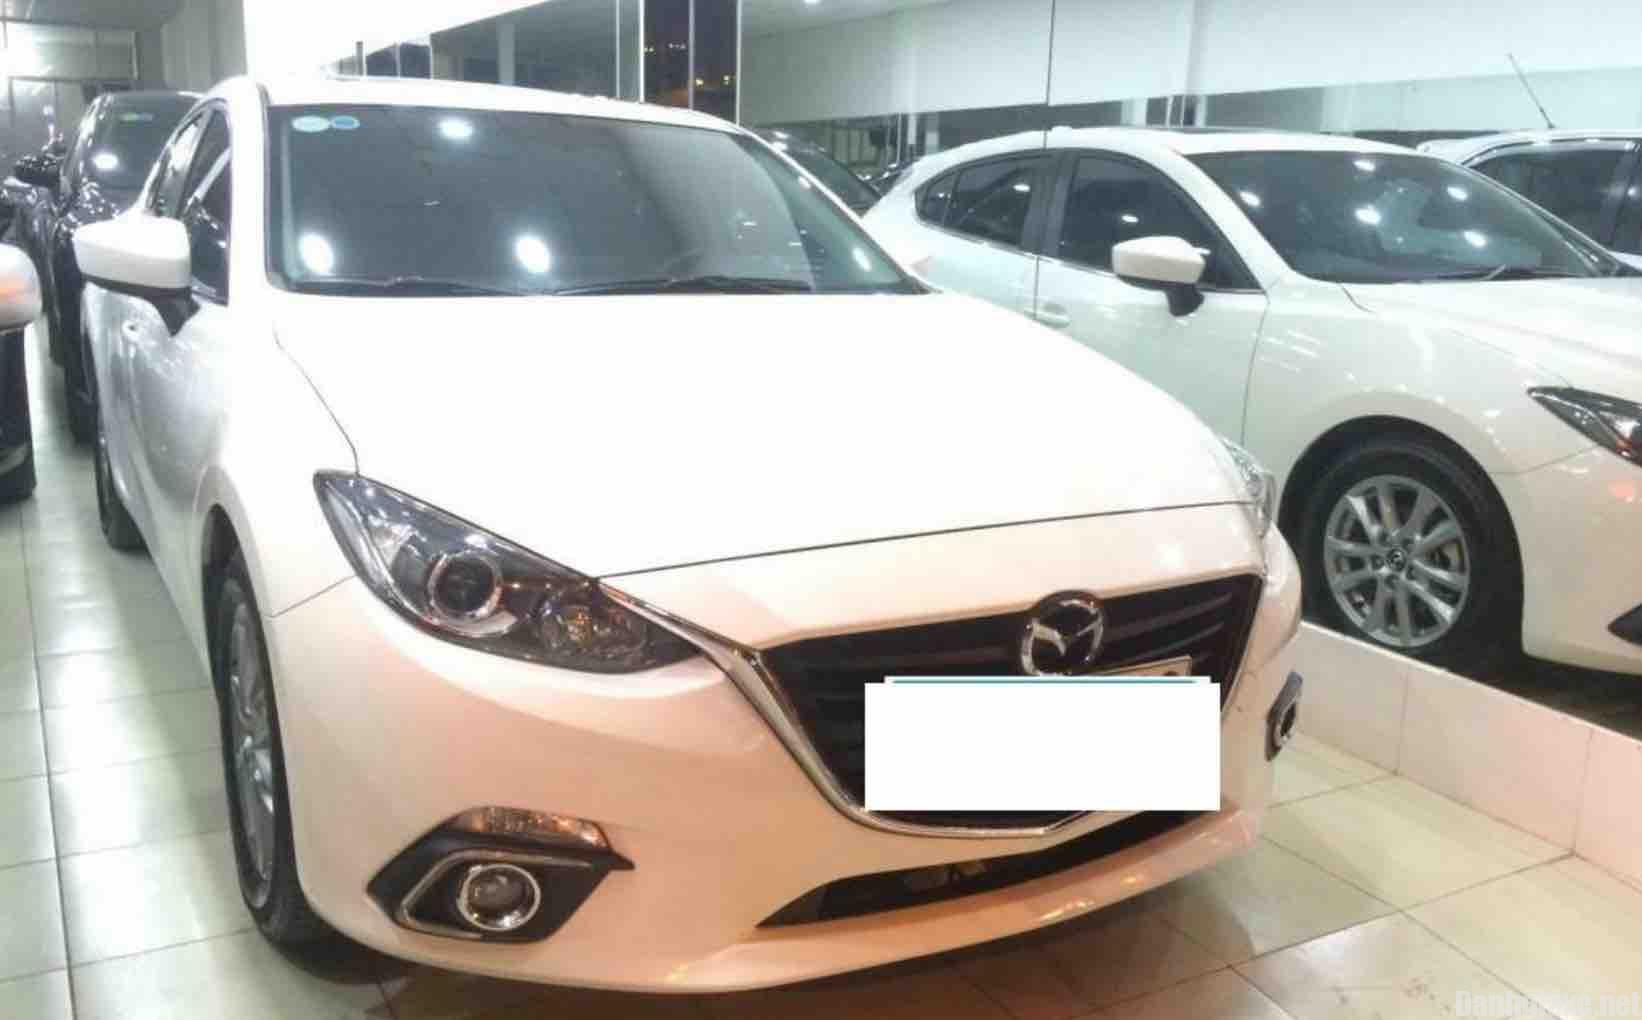 Cần bán xe Mazda 3 Hatchback đời 2015 màu trắng giá 700 triệu - Danhgiaxe